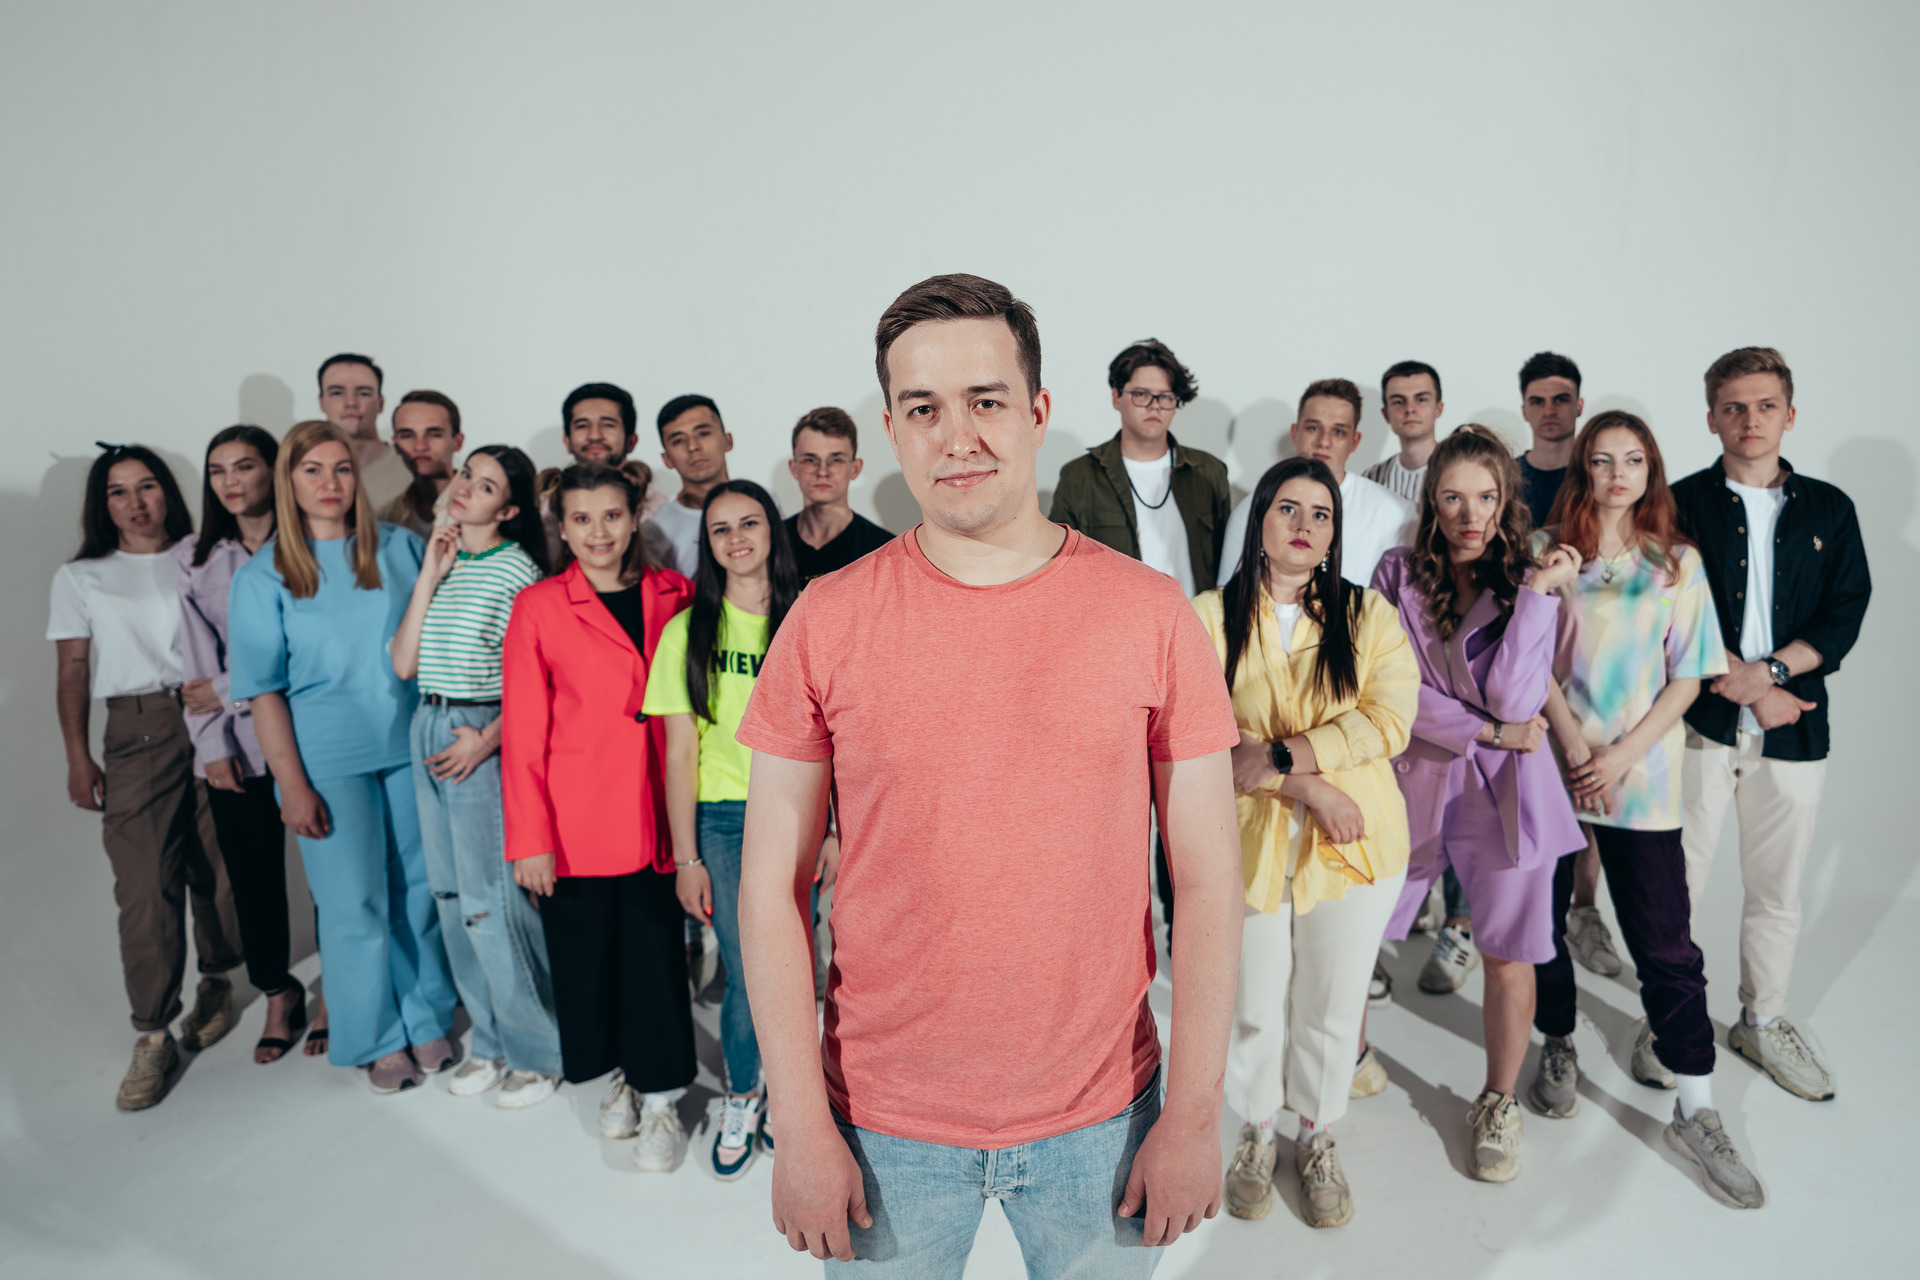 Студенты, аспиранты, обучающиеся и иностранцы Лиги студентов Республики Татарстан региональной молодежной общественной организации, крупнейшем студенческом объединении Поволжья, основанной в 1996 году